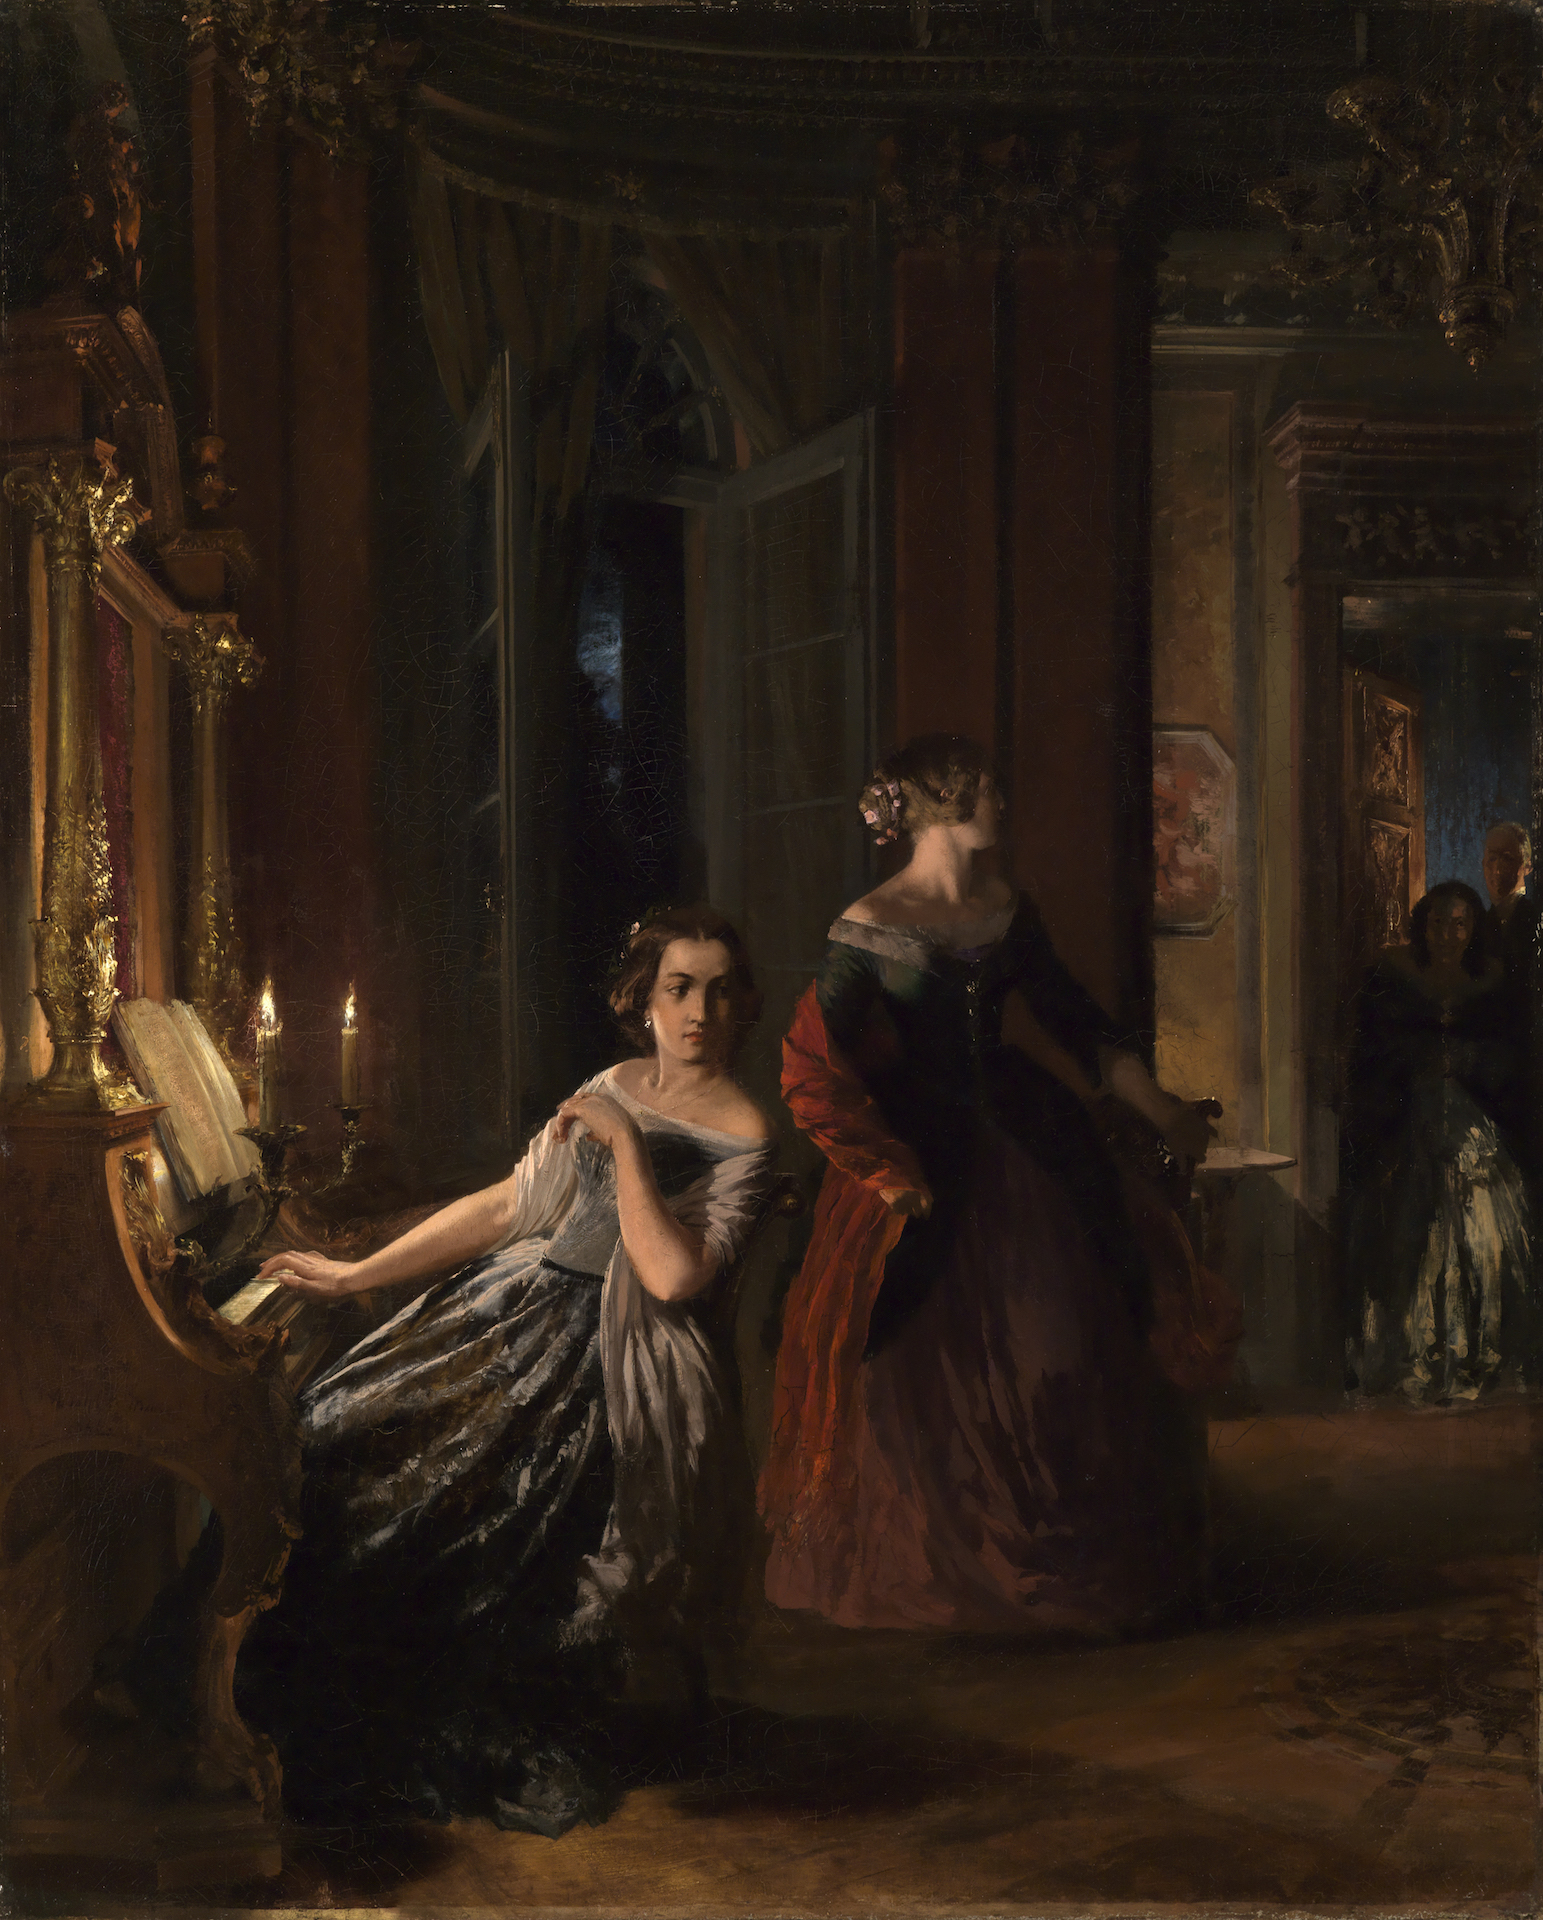 Abbildung des Gemäldes Adolph Menzel: Die Störung. Es zeigt zwei Frauen in ausladender Abendrobe, wovon eine an einem Klavier sitzt. Der Raum wirkt wie ein Innenraum eines Königsschlosses; mit Säulen Gold- und Marmorstuckaturen.